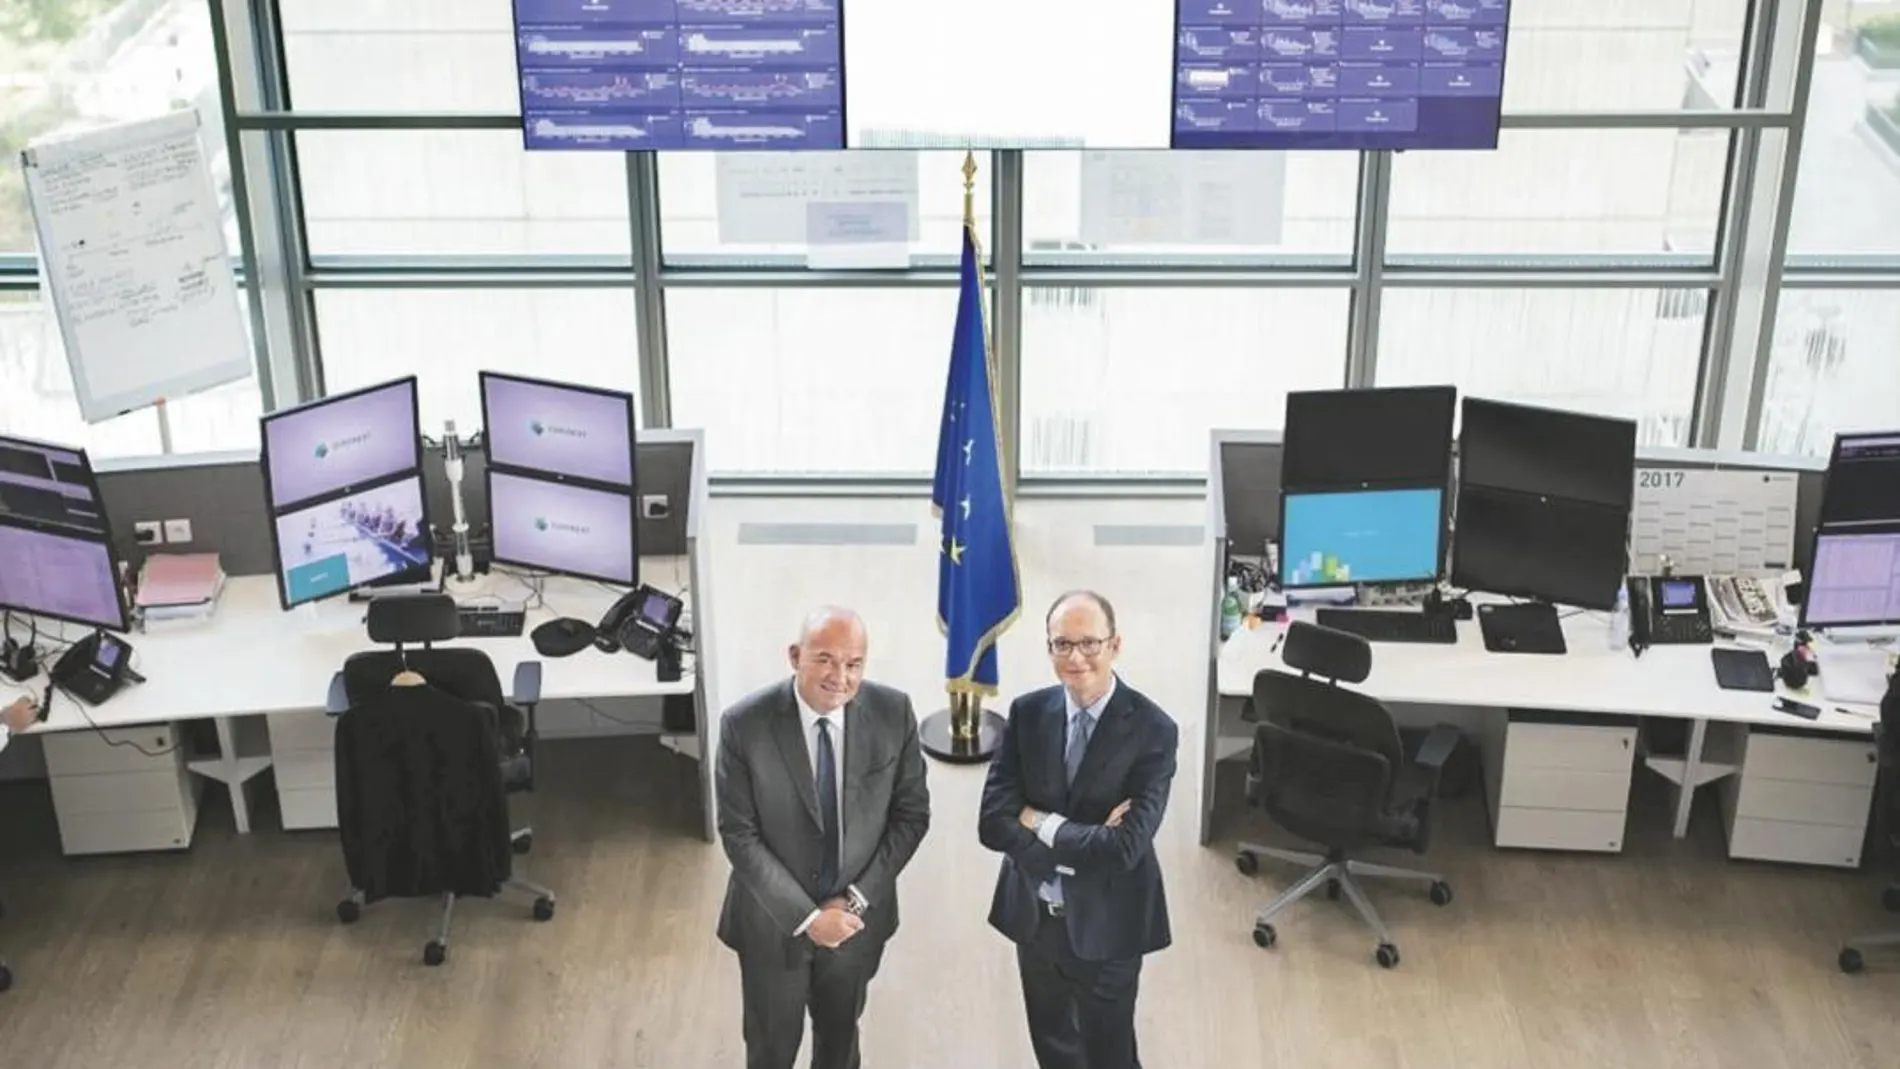 Stéphane Boujnahes, máximo responsable de Euronext, junto a Anthony Attia, CEO de Euronext en París y Global Head of Listing